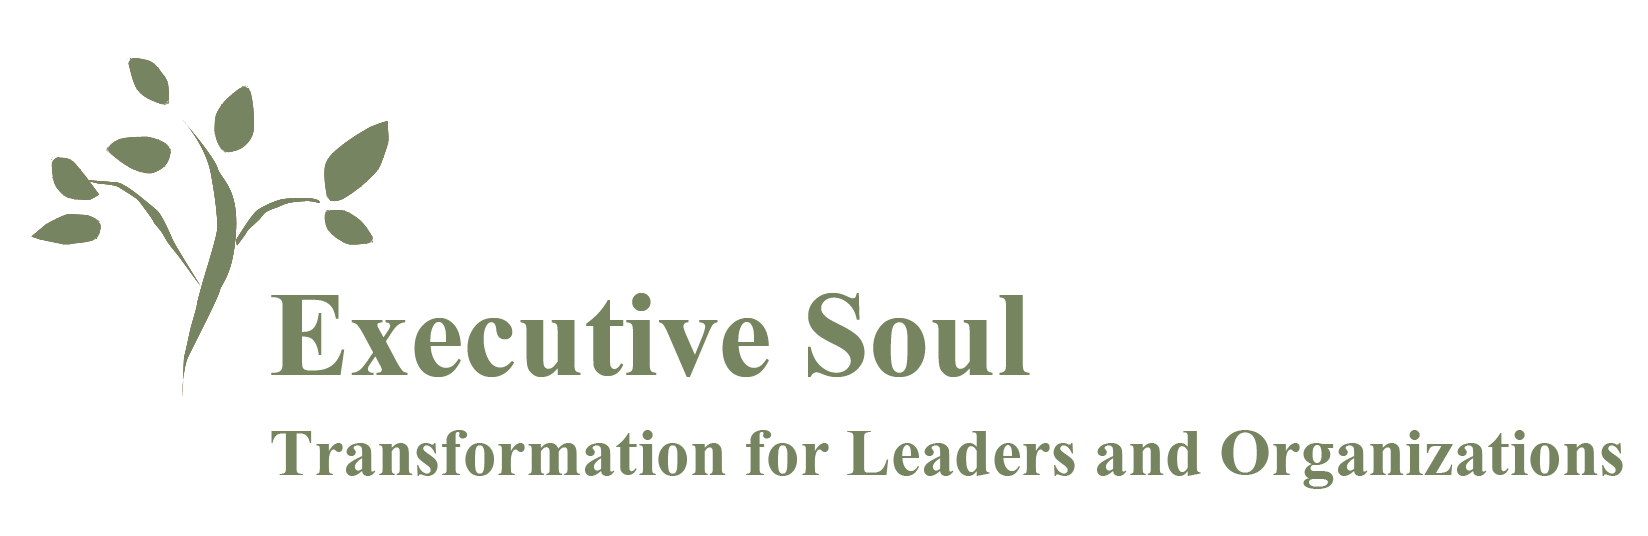 Executive Soul PNG Logo.png